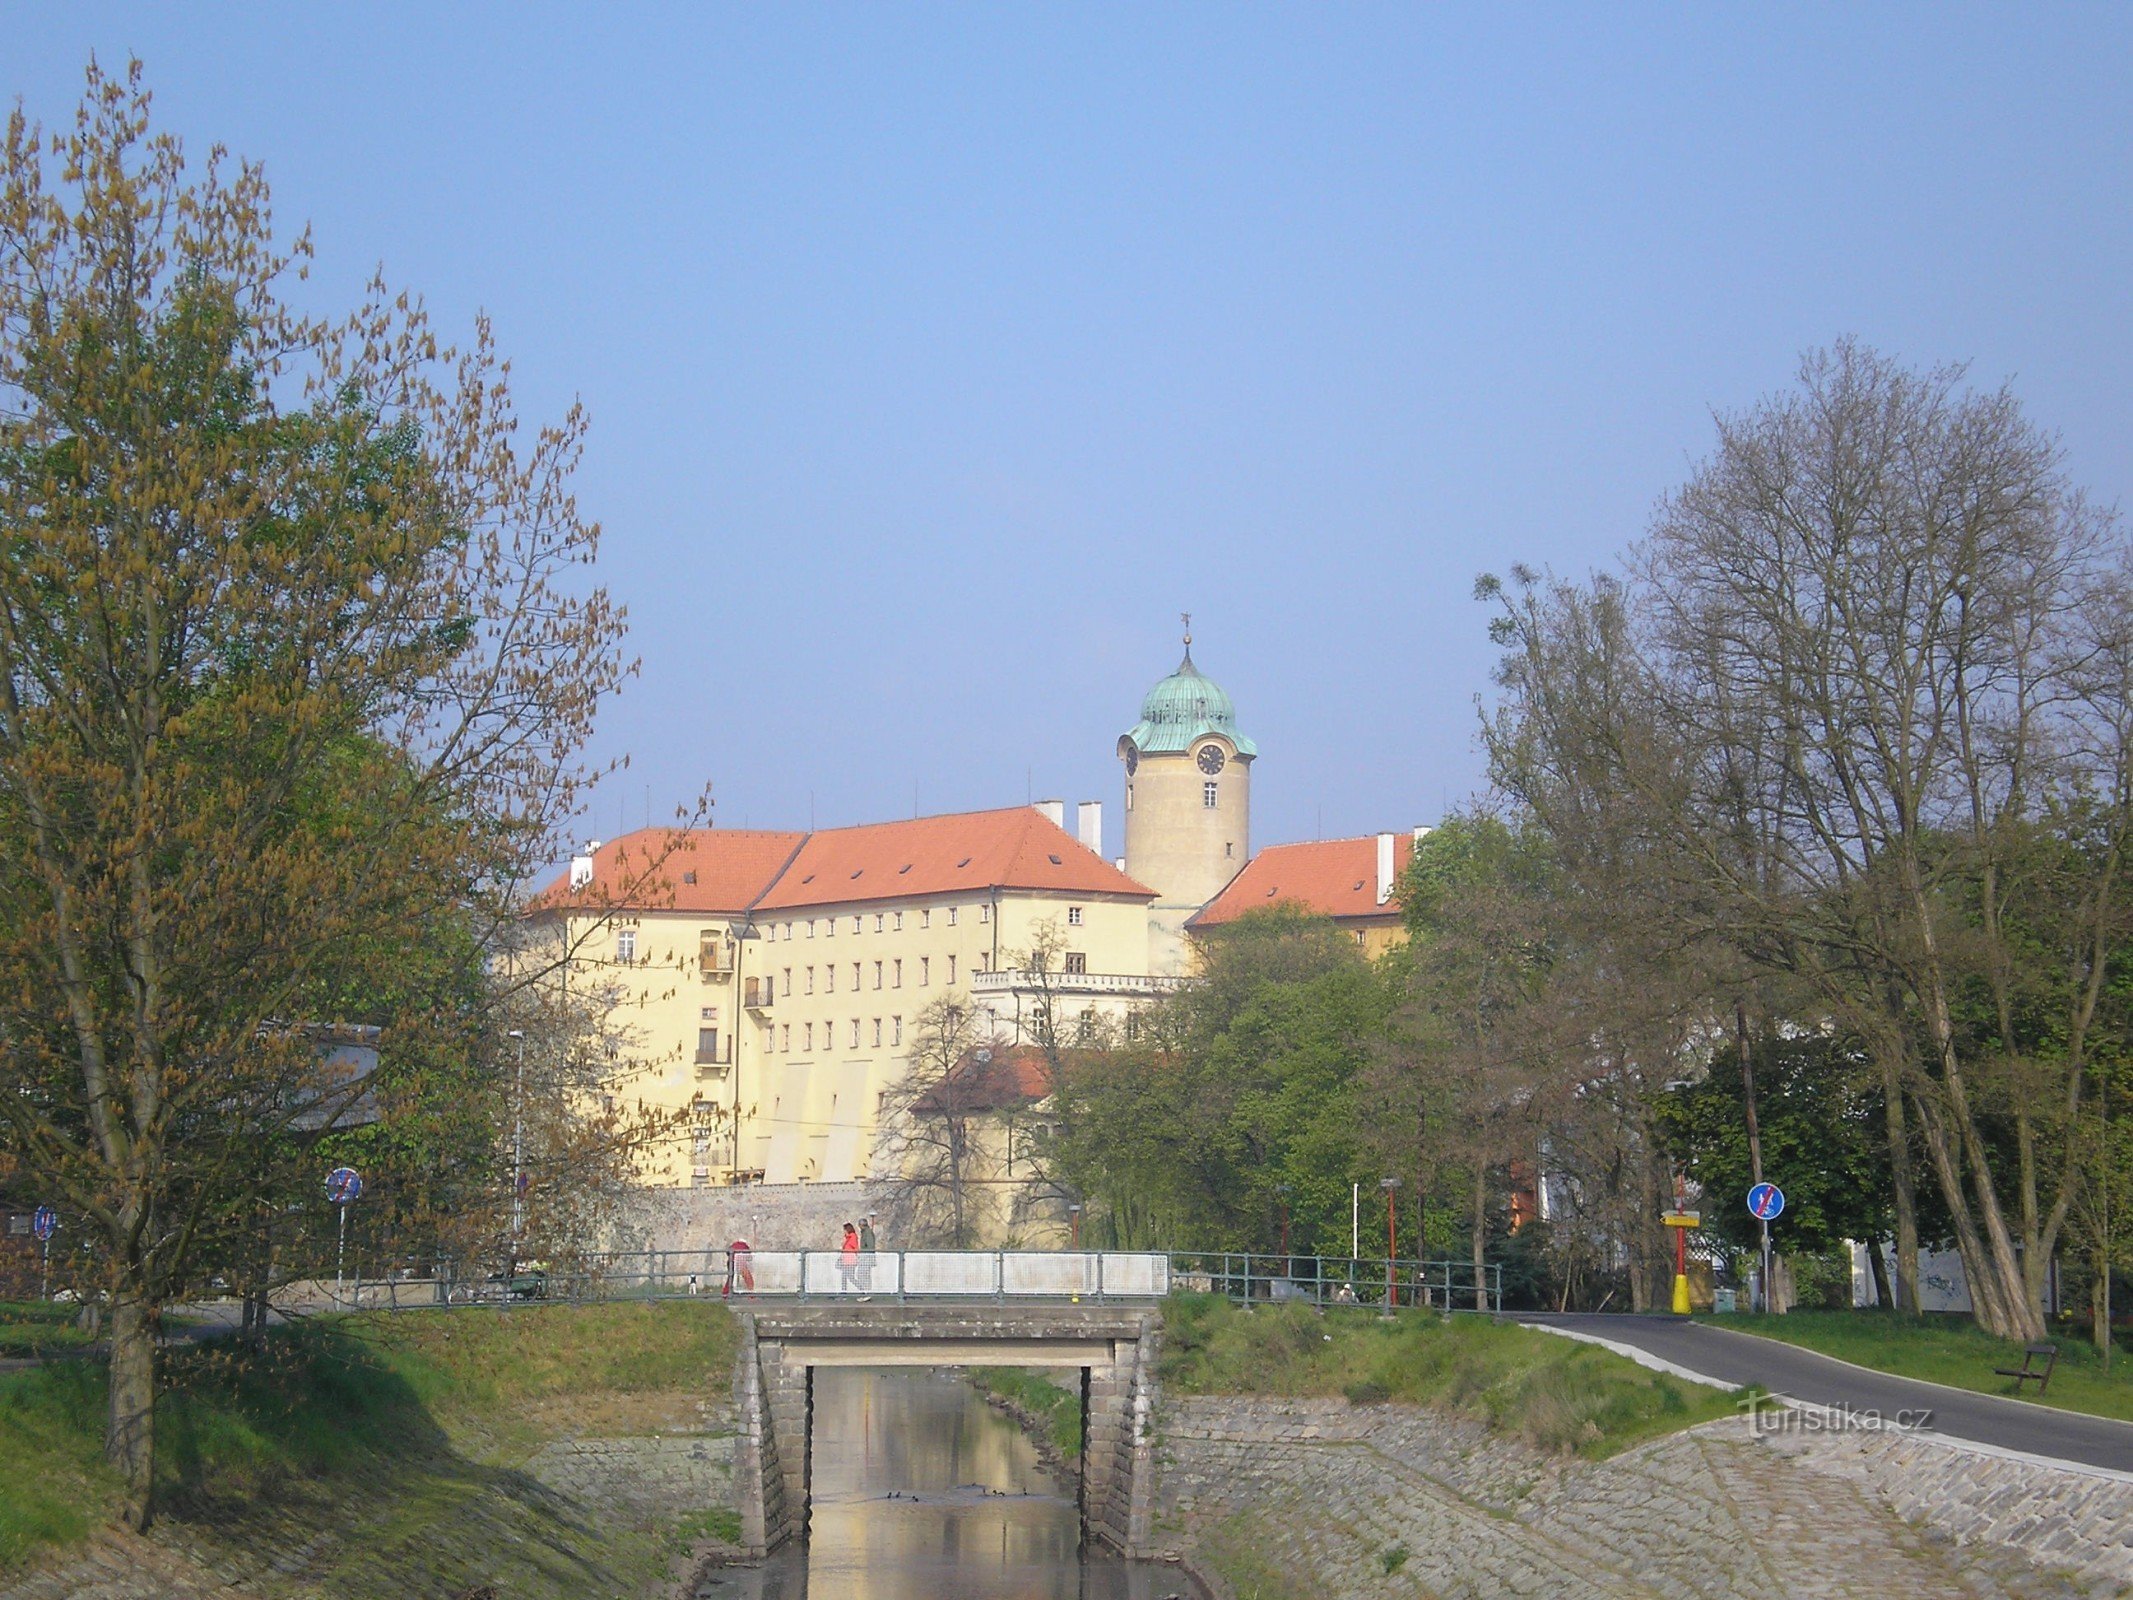 Castelul Poděbrady